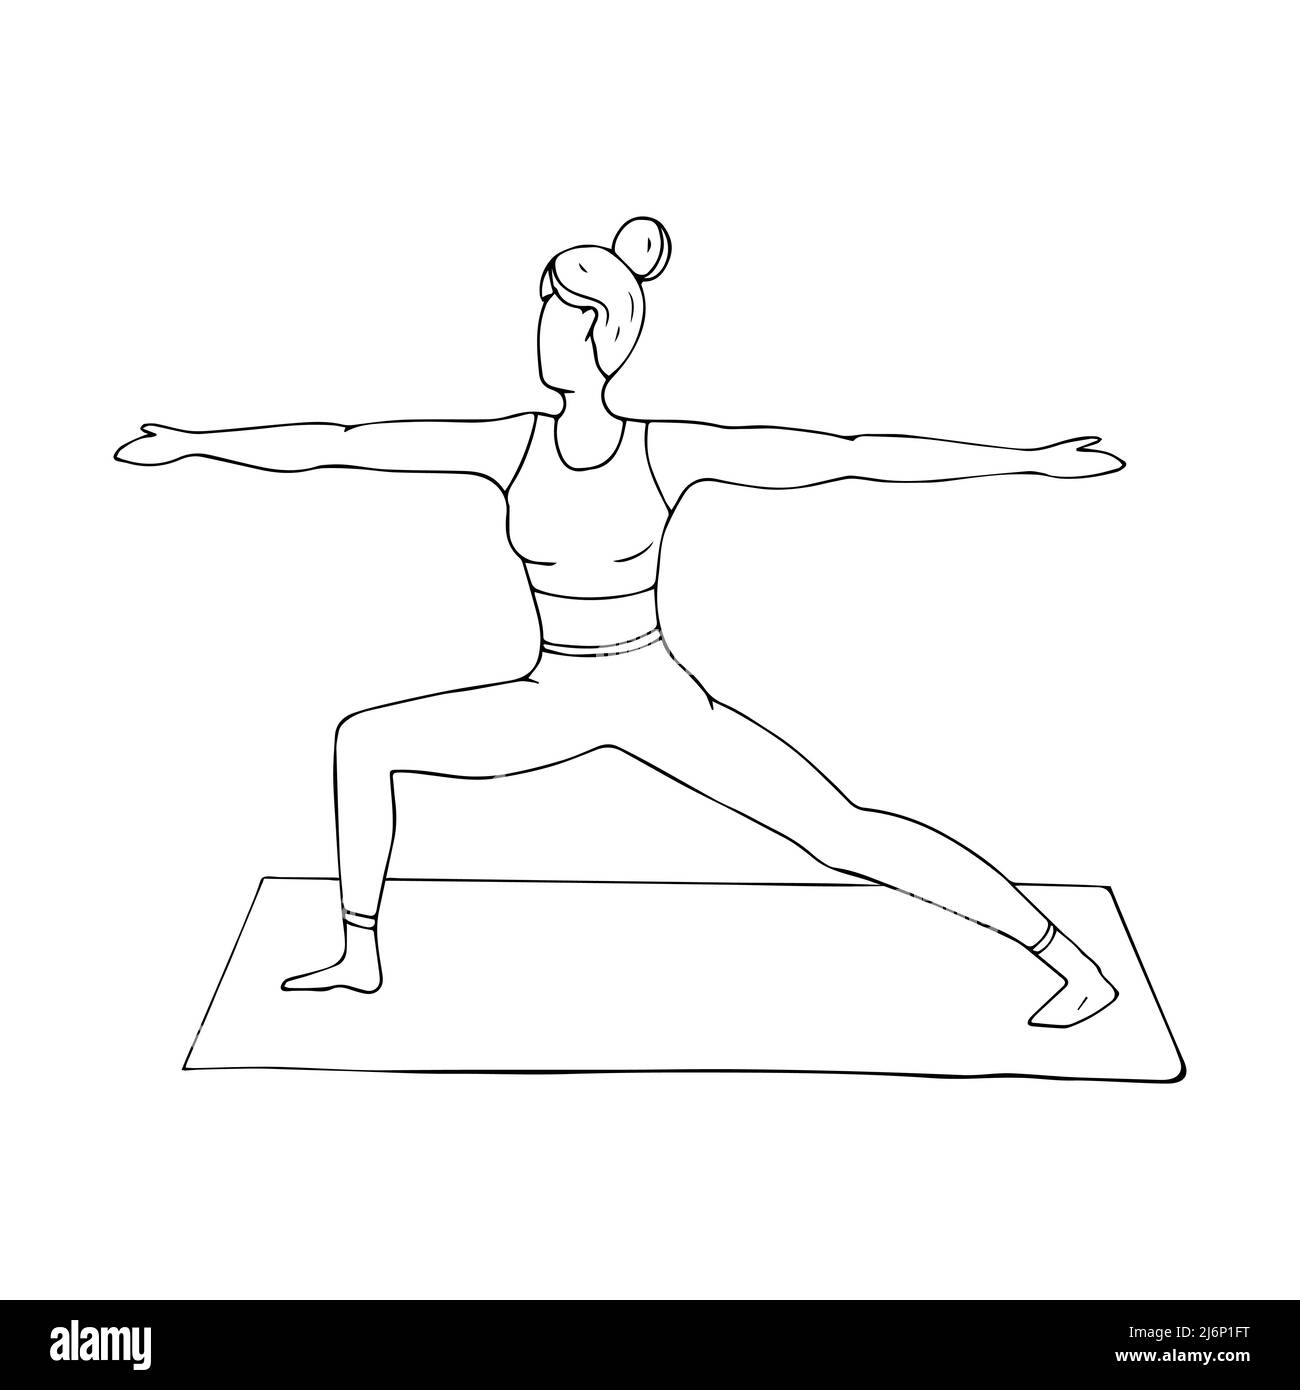 Une jeune fille est engagée dans le Hatha yoga. La posture du guerrier. Virabhadrasana. Gymnastique, mode de vie sain. Style Doodle. Illustrat vectoriel noir et blanc Illustration de Vecteur